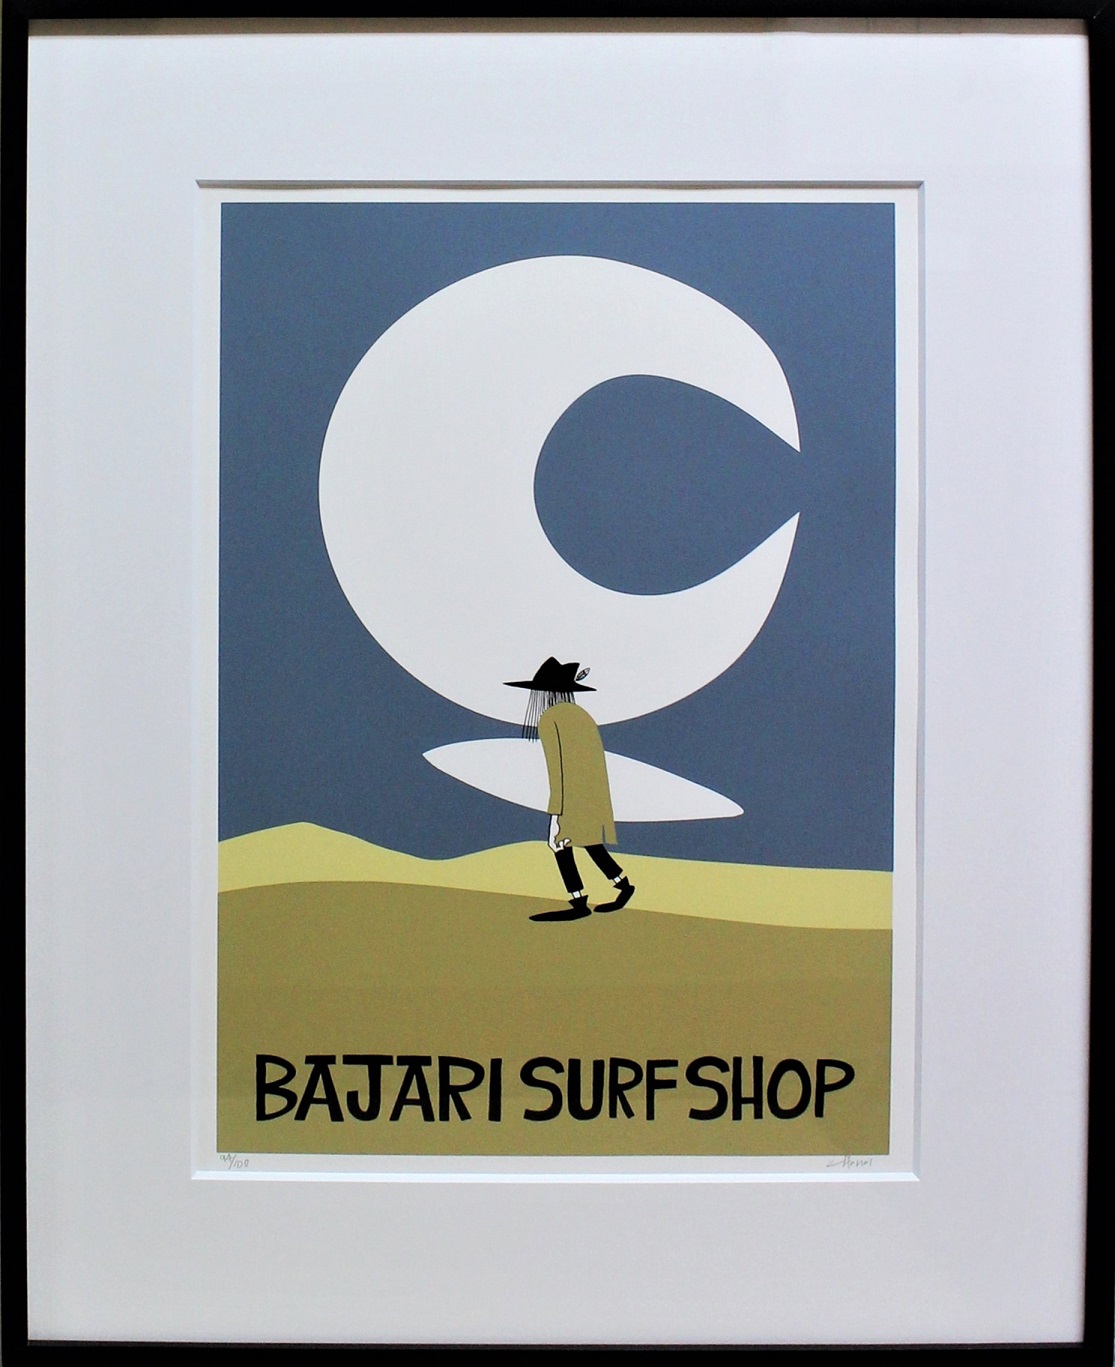 BAJARI SURF SHOPS